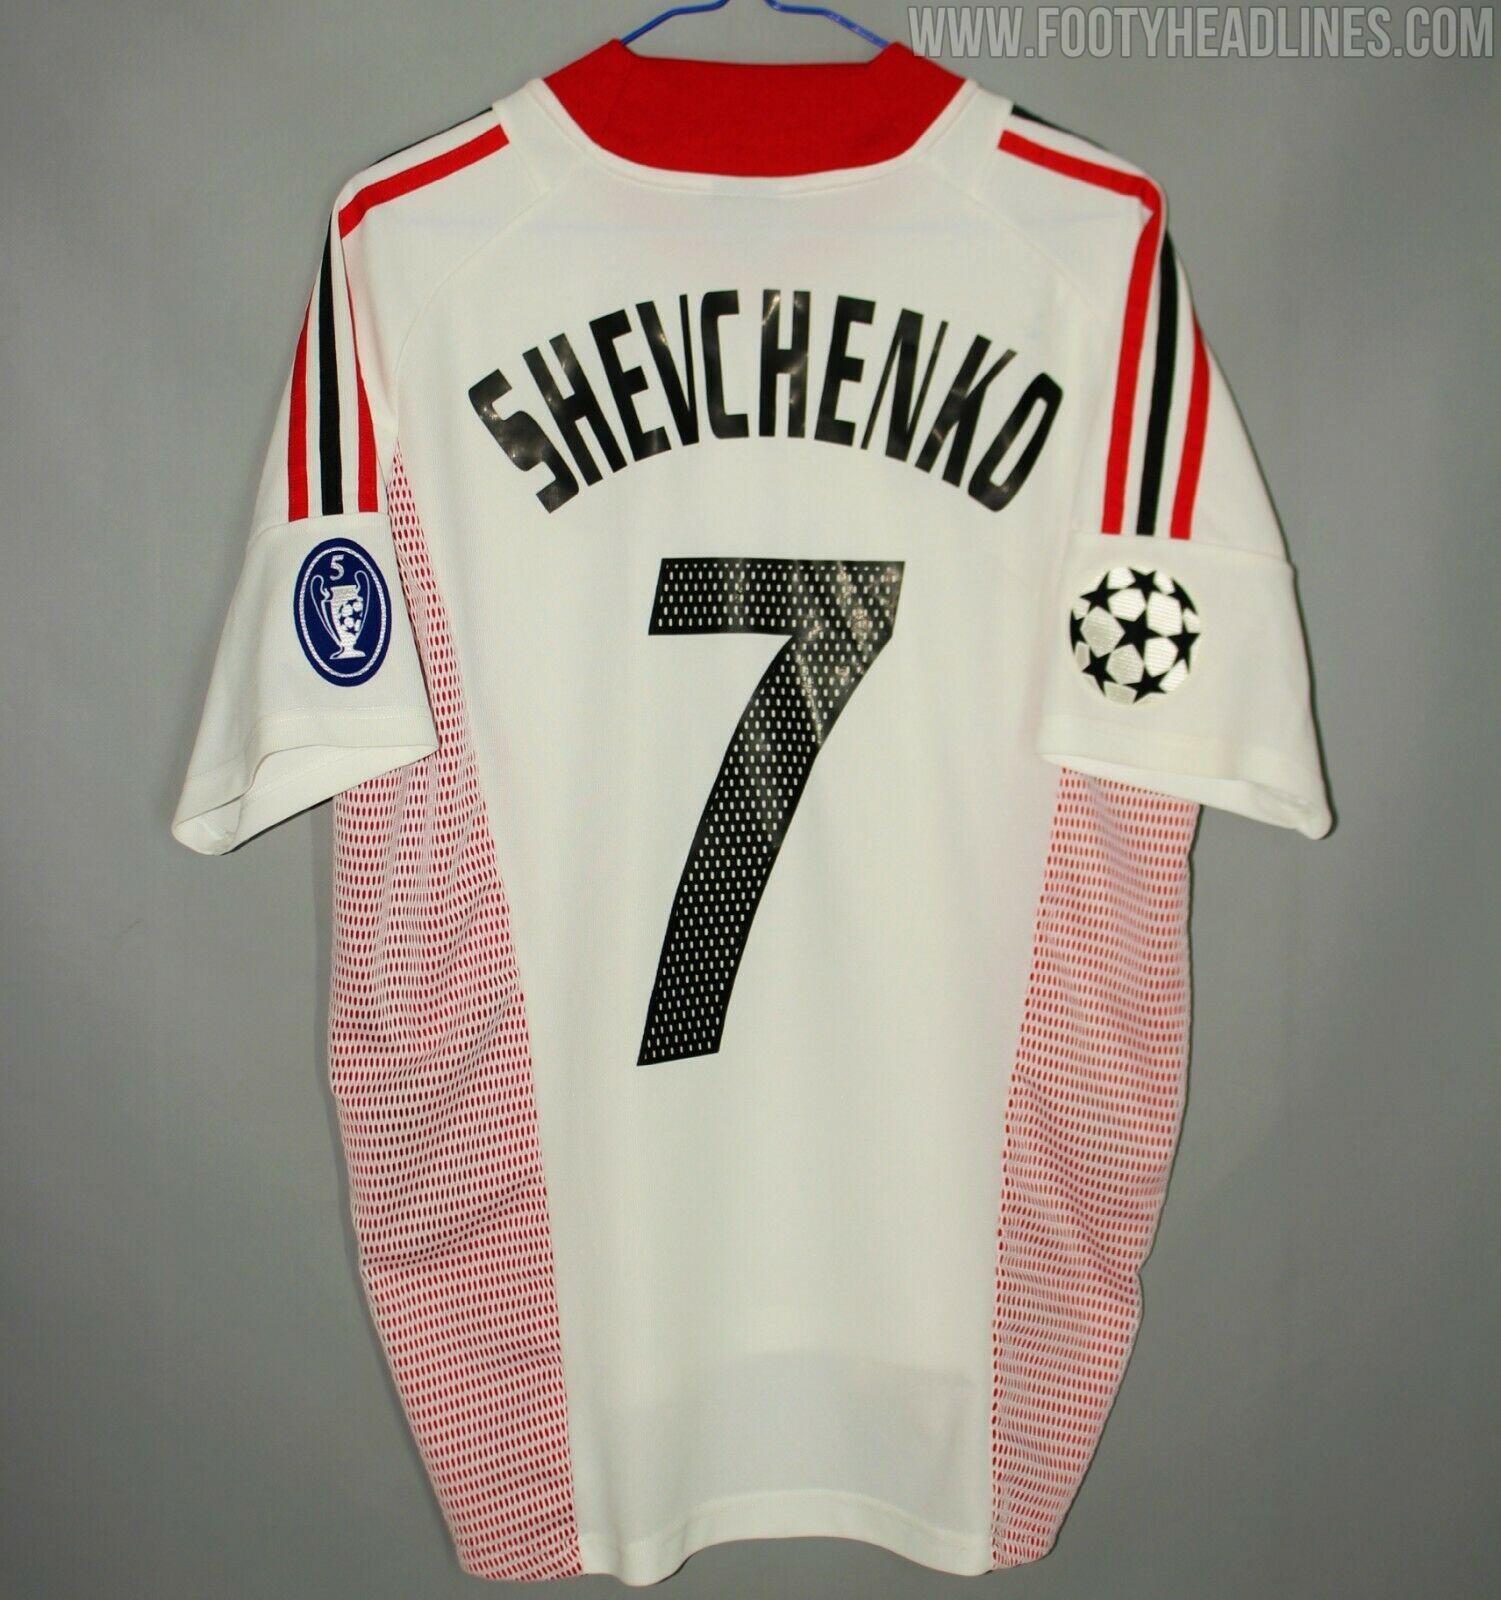 Lanzamiento del kit especial Milan 2022 Shevchenko